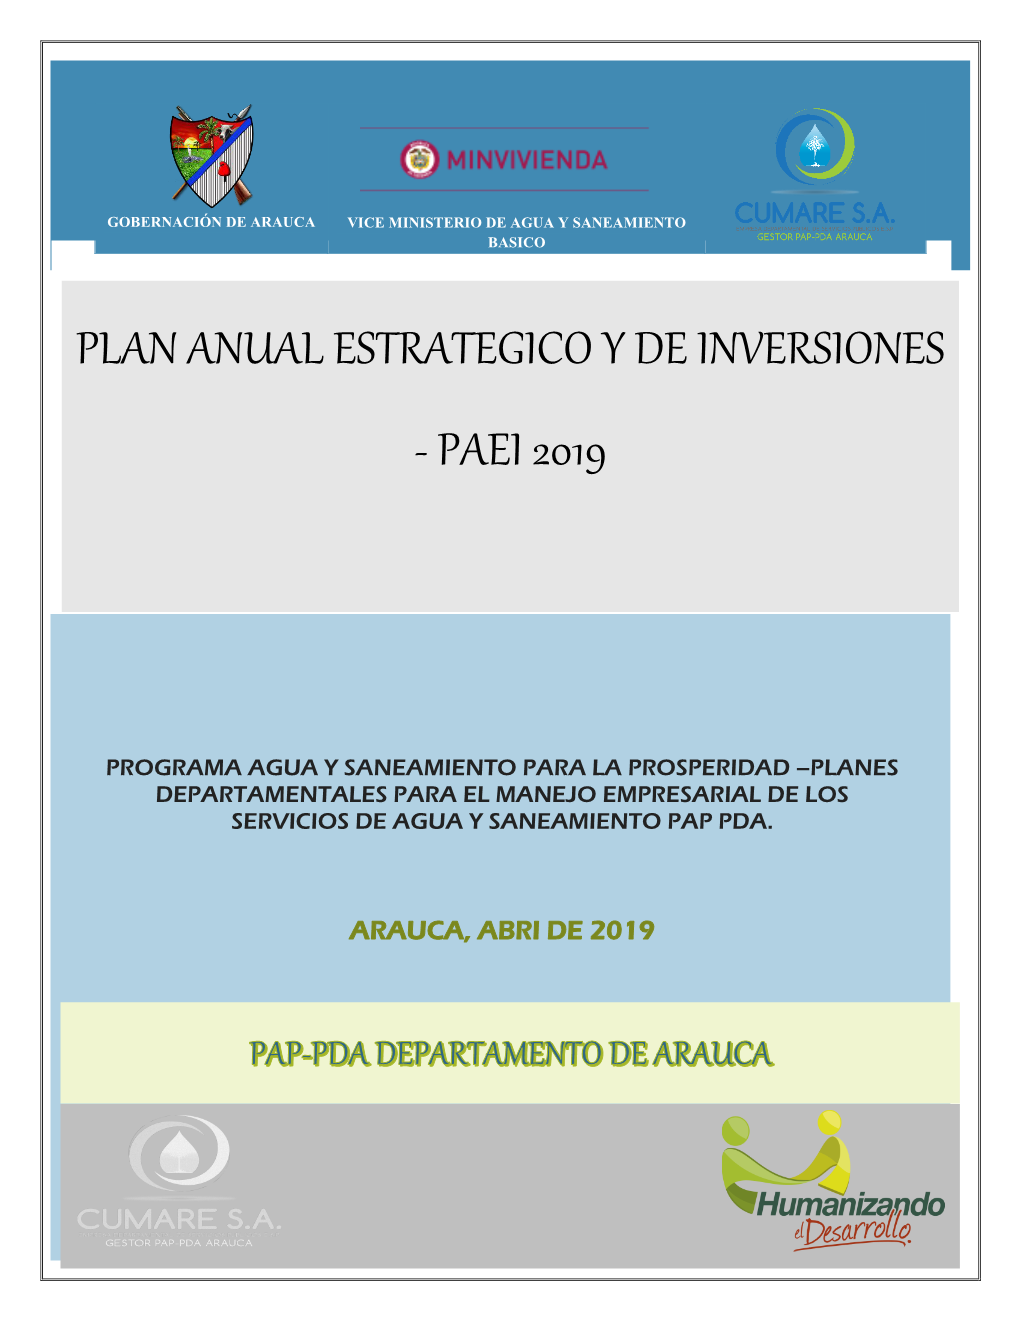 Plan Anual Estrategico Y De Inversiones, Paei -2019